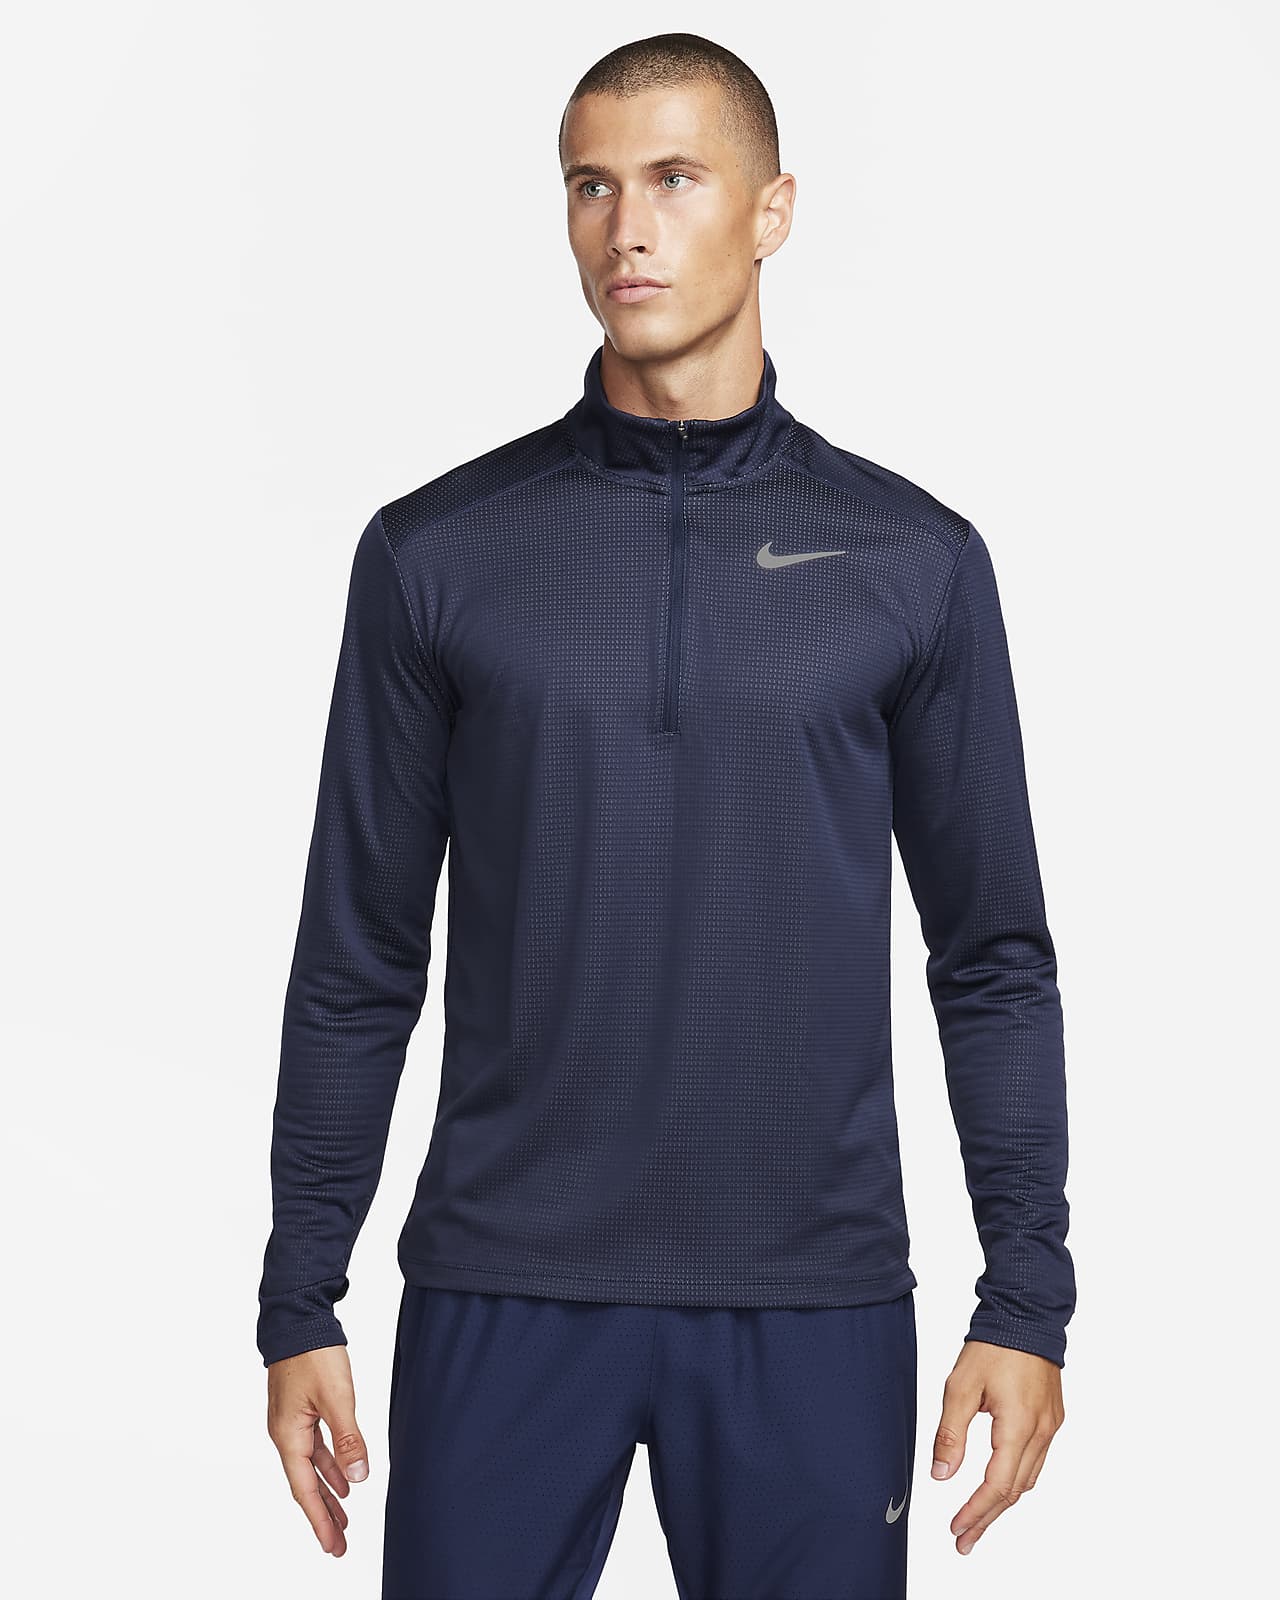 Camisola de running com fecho até meio Nike Pacer para homem